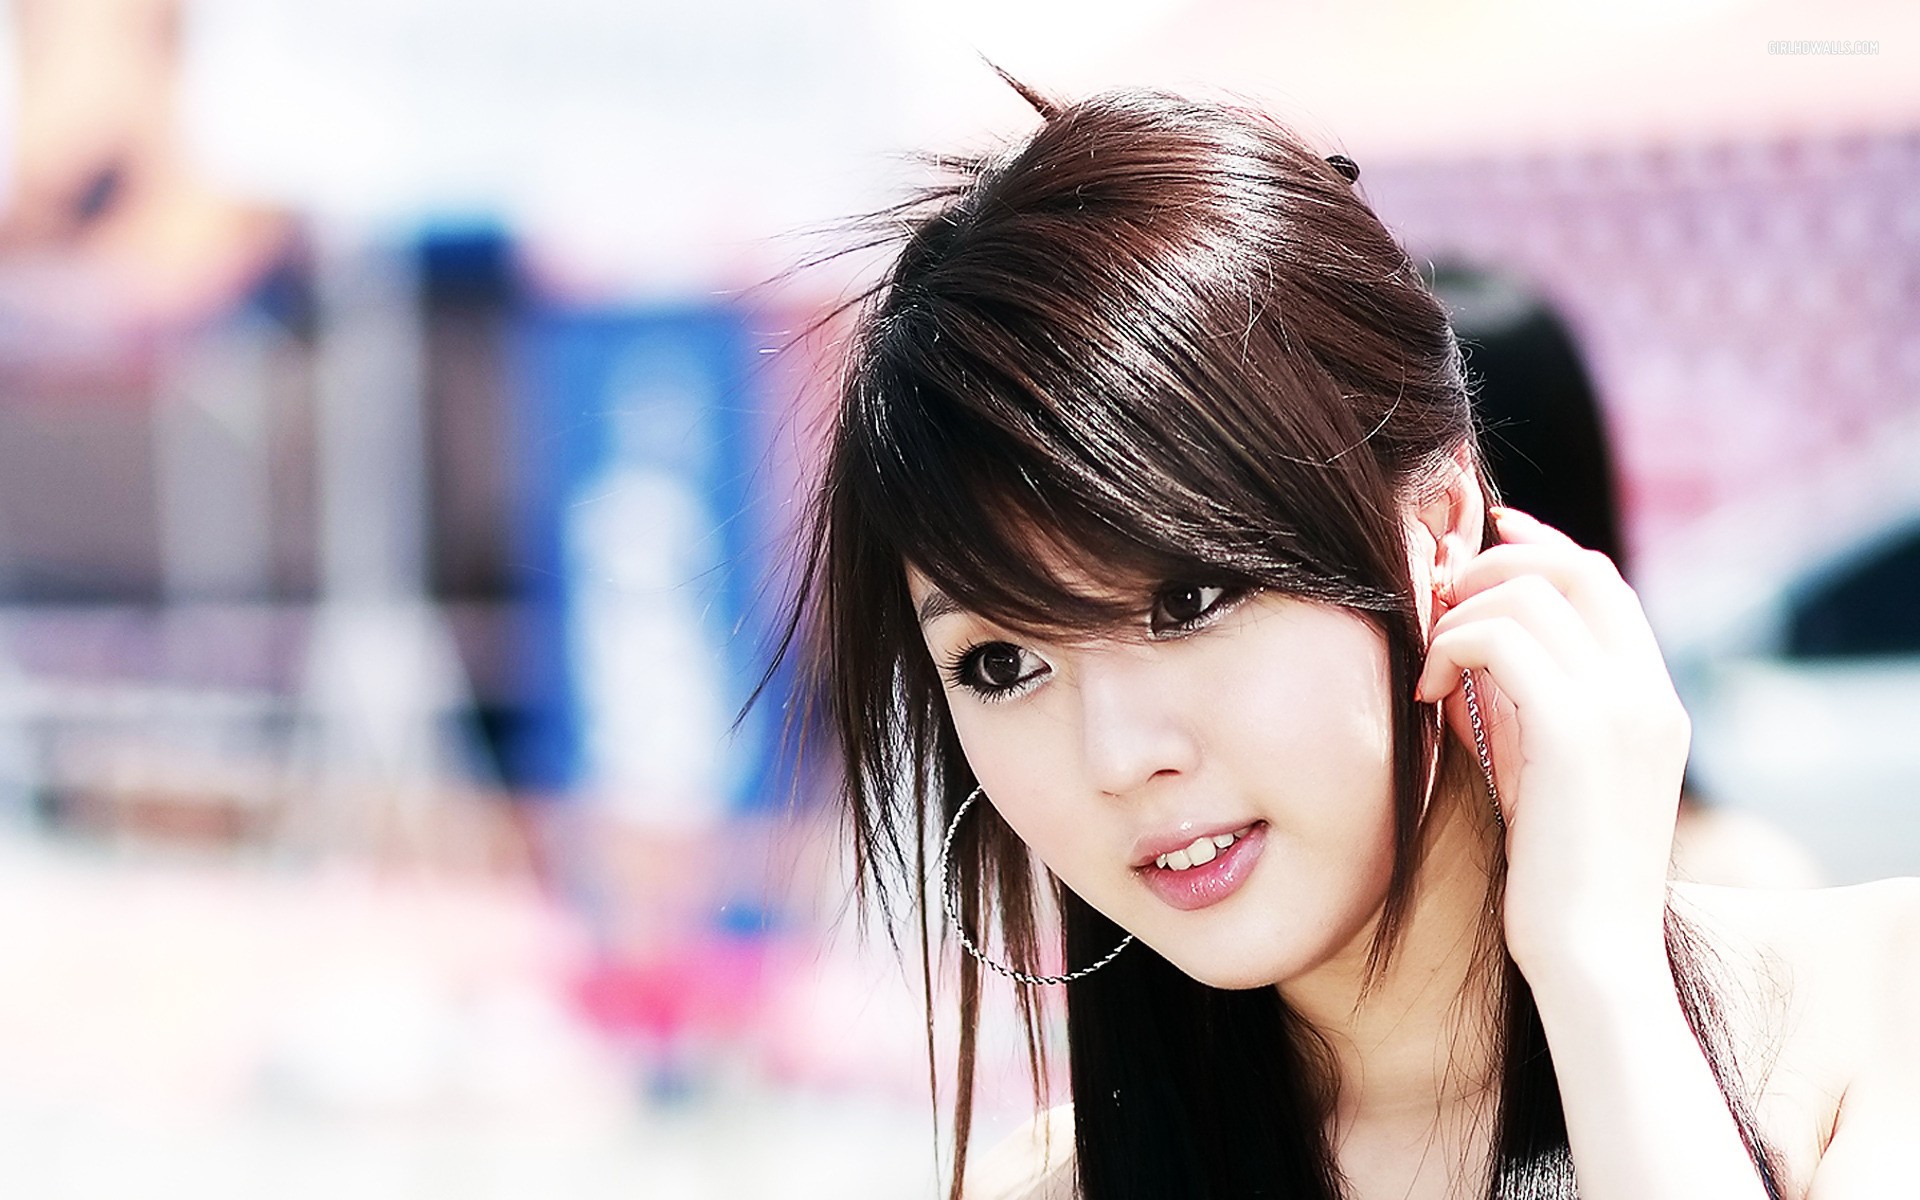 hwang mi hee asian women brunette Wallpaper